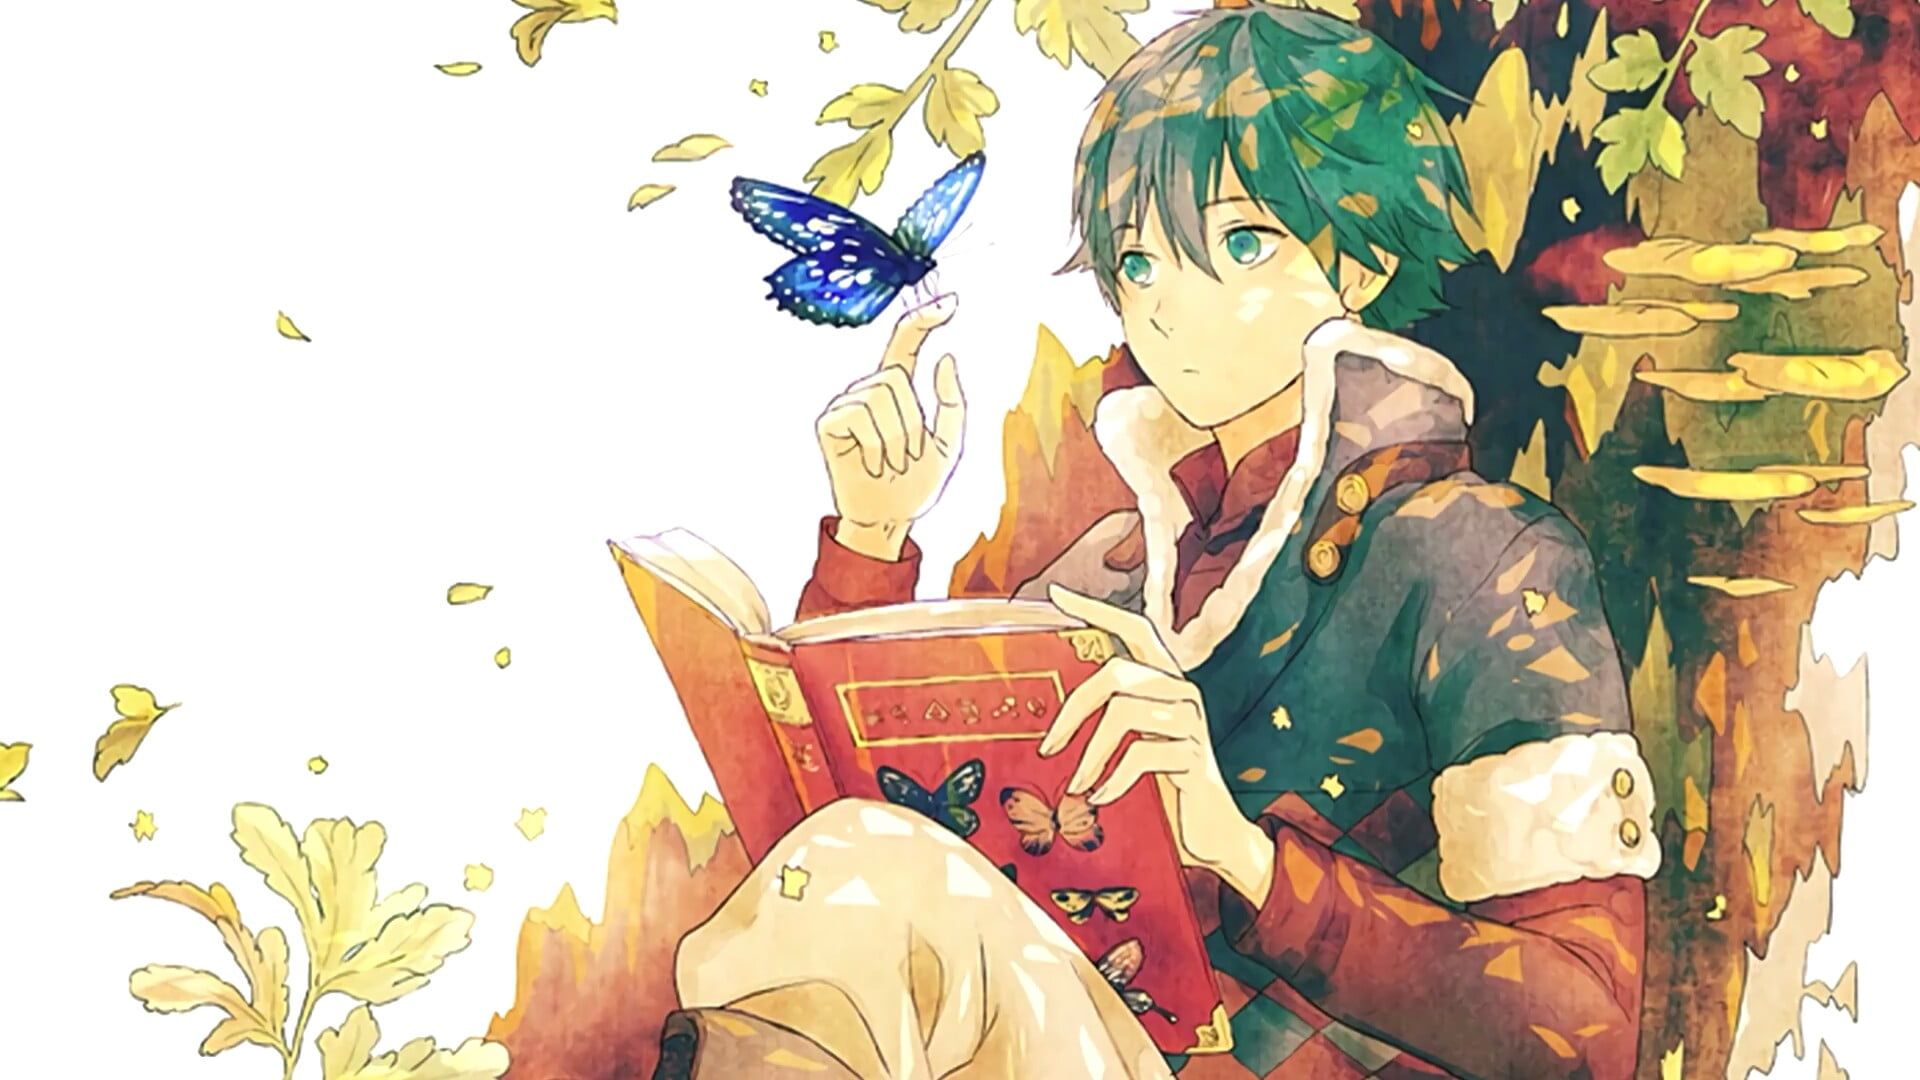 anime art anime boy anime guy #book #read #butterfly #tree #art P # wallpaper #hdwallpaper #desktop. Anime, Anime art, Anime boy